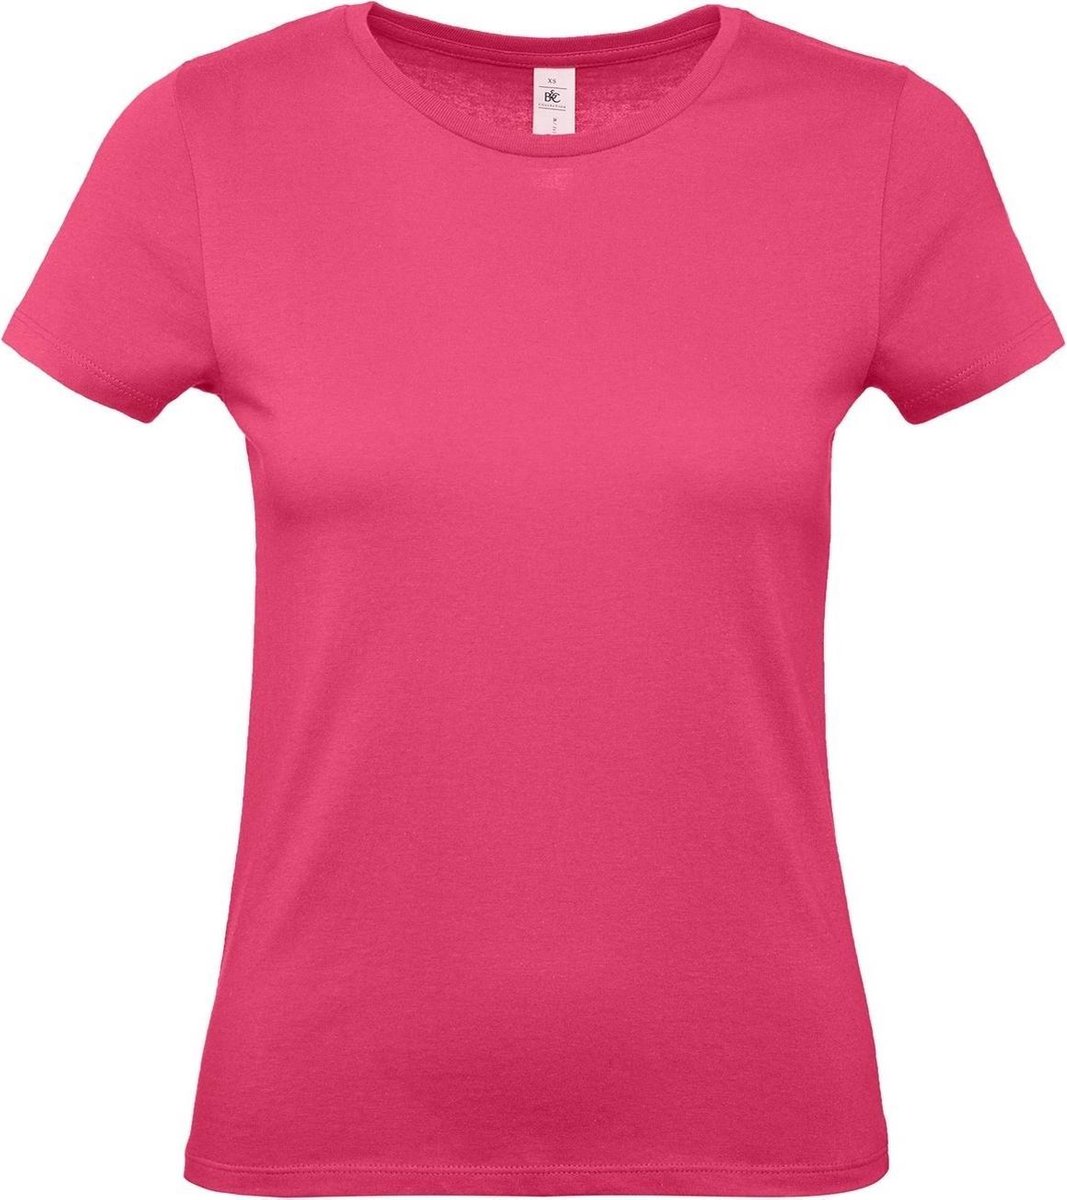 Set van 2x stuks fuchsia roze basic t-shirts met ronde hals voor dames - katoen - 145 grams - shirts / kleding, maat: 2XL (44)